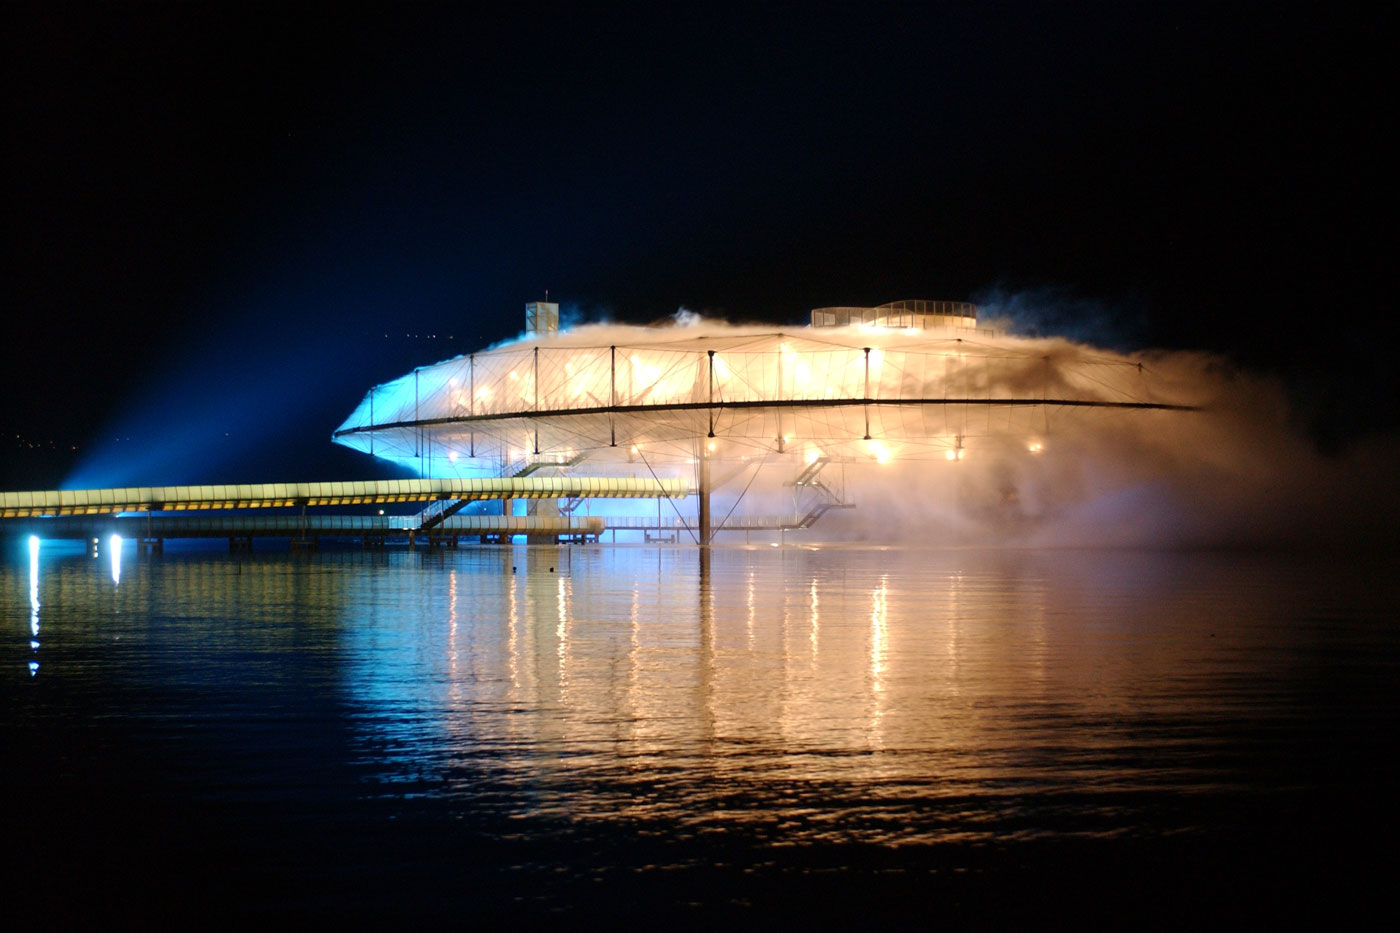 Schweizerische Landesausstellung EXPO.02 Yverdon  Dank der Leuchten zwischen den zwei Zwillingsträgern der Brücke verwandelten sich die Brücken in der Nacht in Leuchtkörper. Im Bild sind die Leuchten der hinteren Brücke ausgeschaltet.